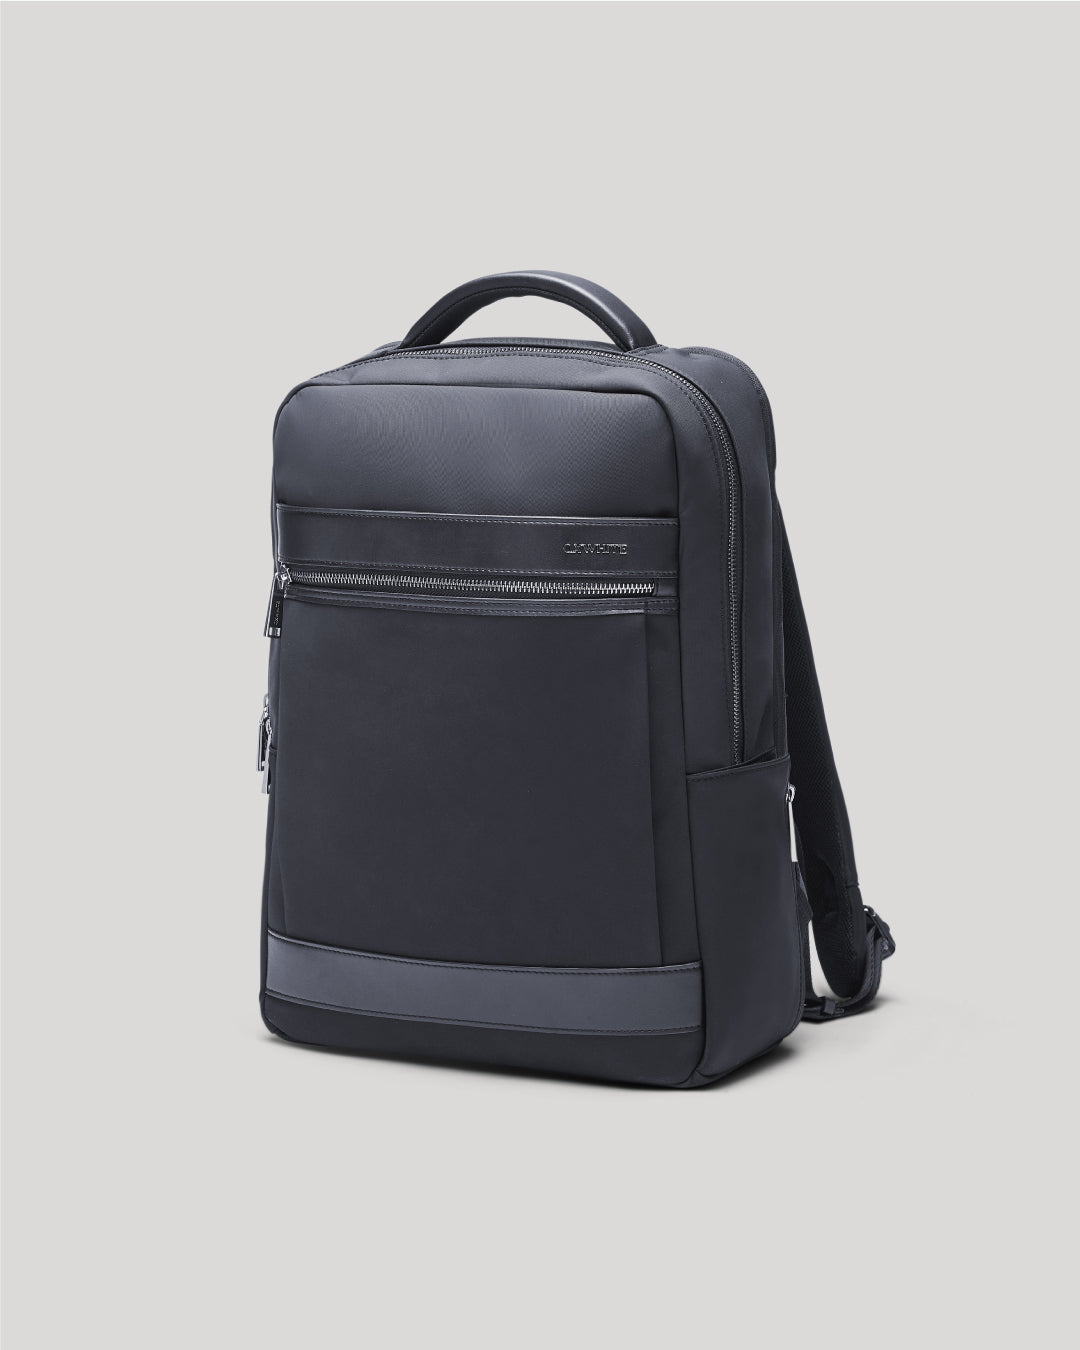 Ultralight Slim Laptop Backpack